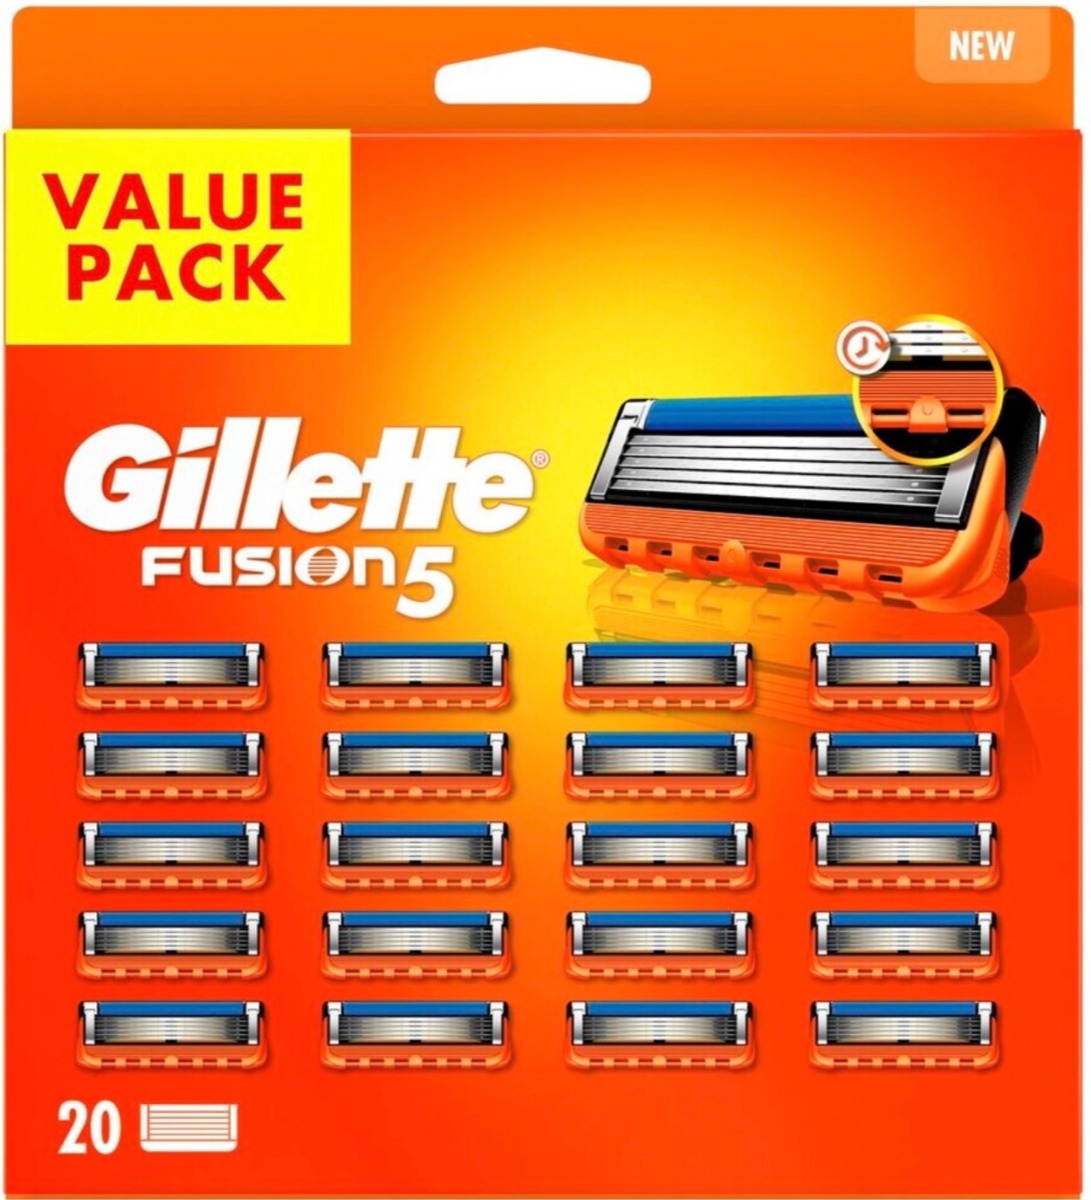 Gillette Fusion5 Scheermesjes 20 Stuks XXL Verpakking